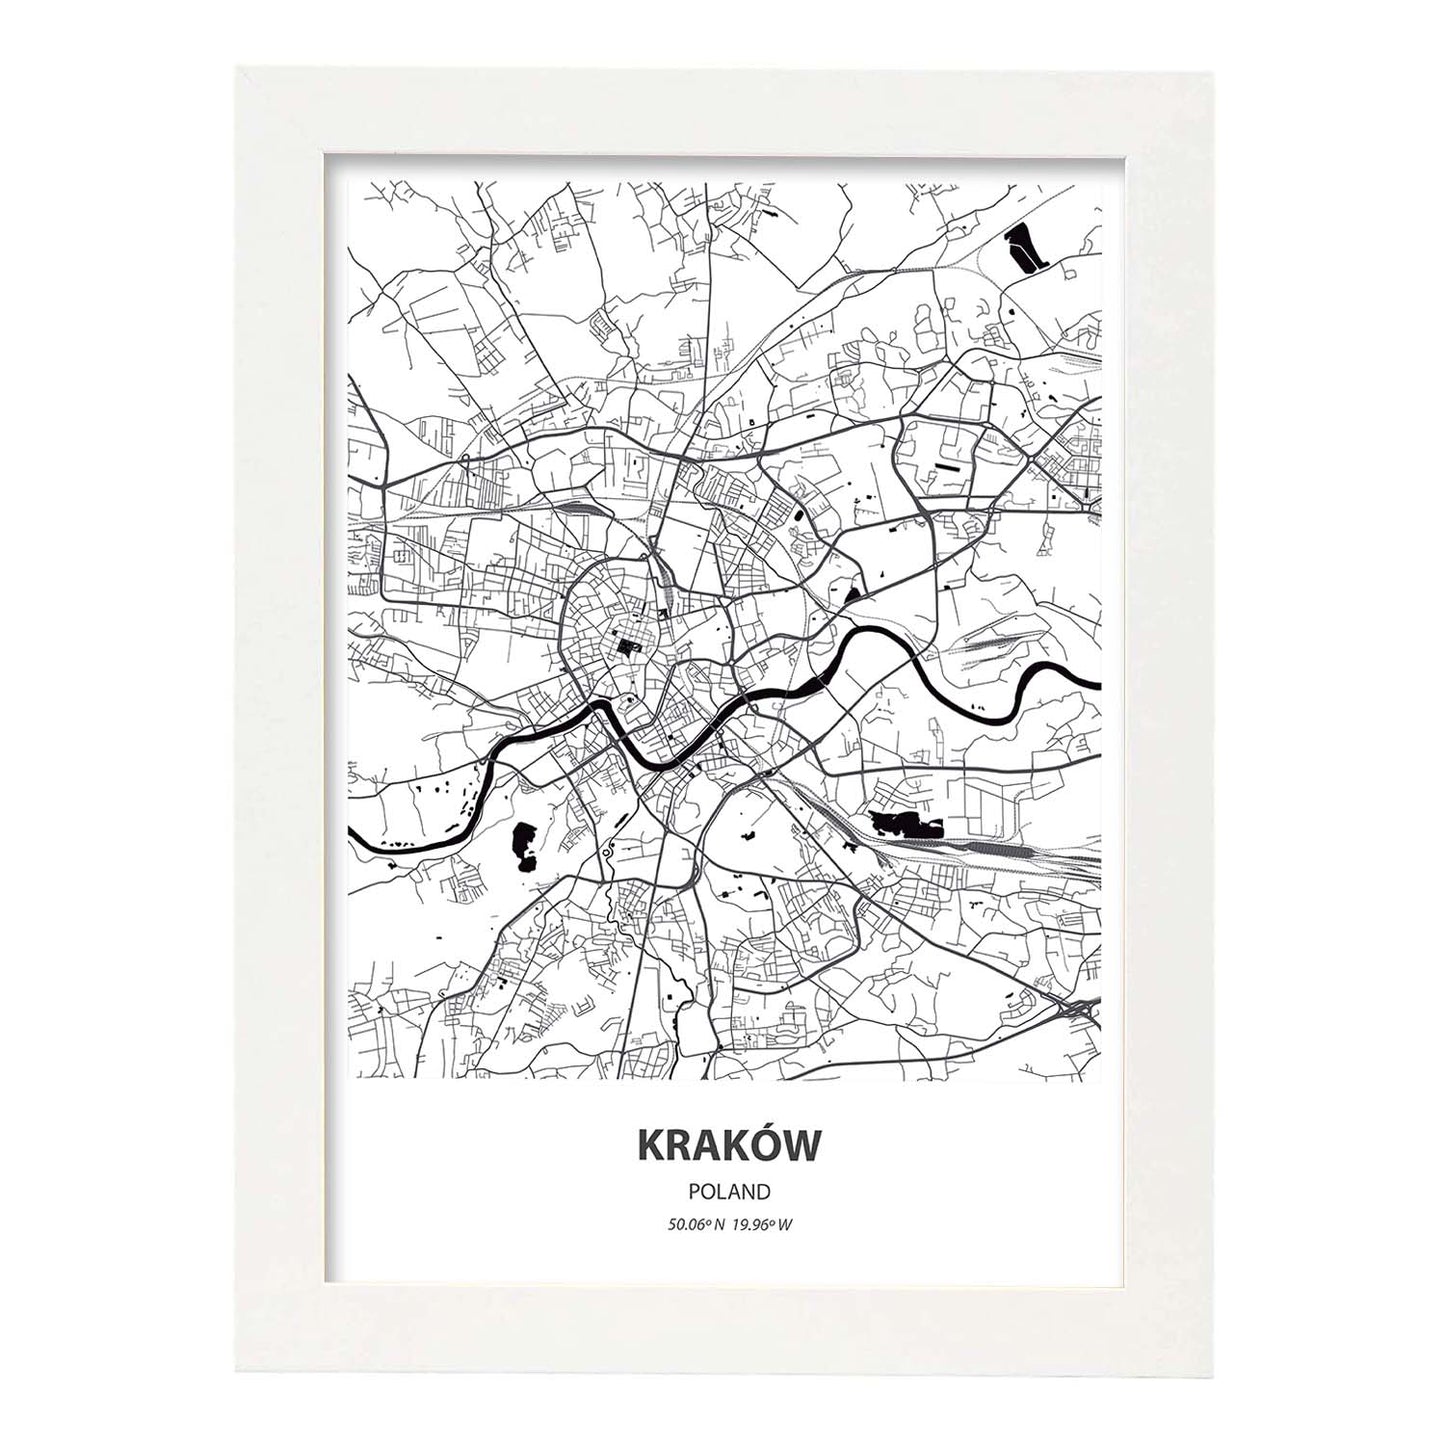 Poster con mapa de Krakow - Polonia. Láminas de ciudades de Europa con mares y ríos en color negro.-Artwork-Nacnic-A4-Marco Blanco-Nacnic Estudio SL